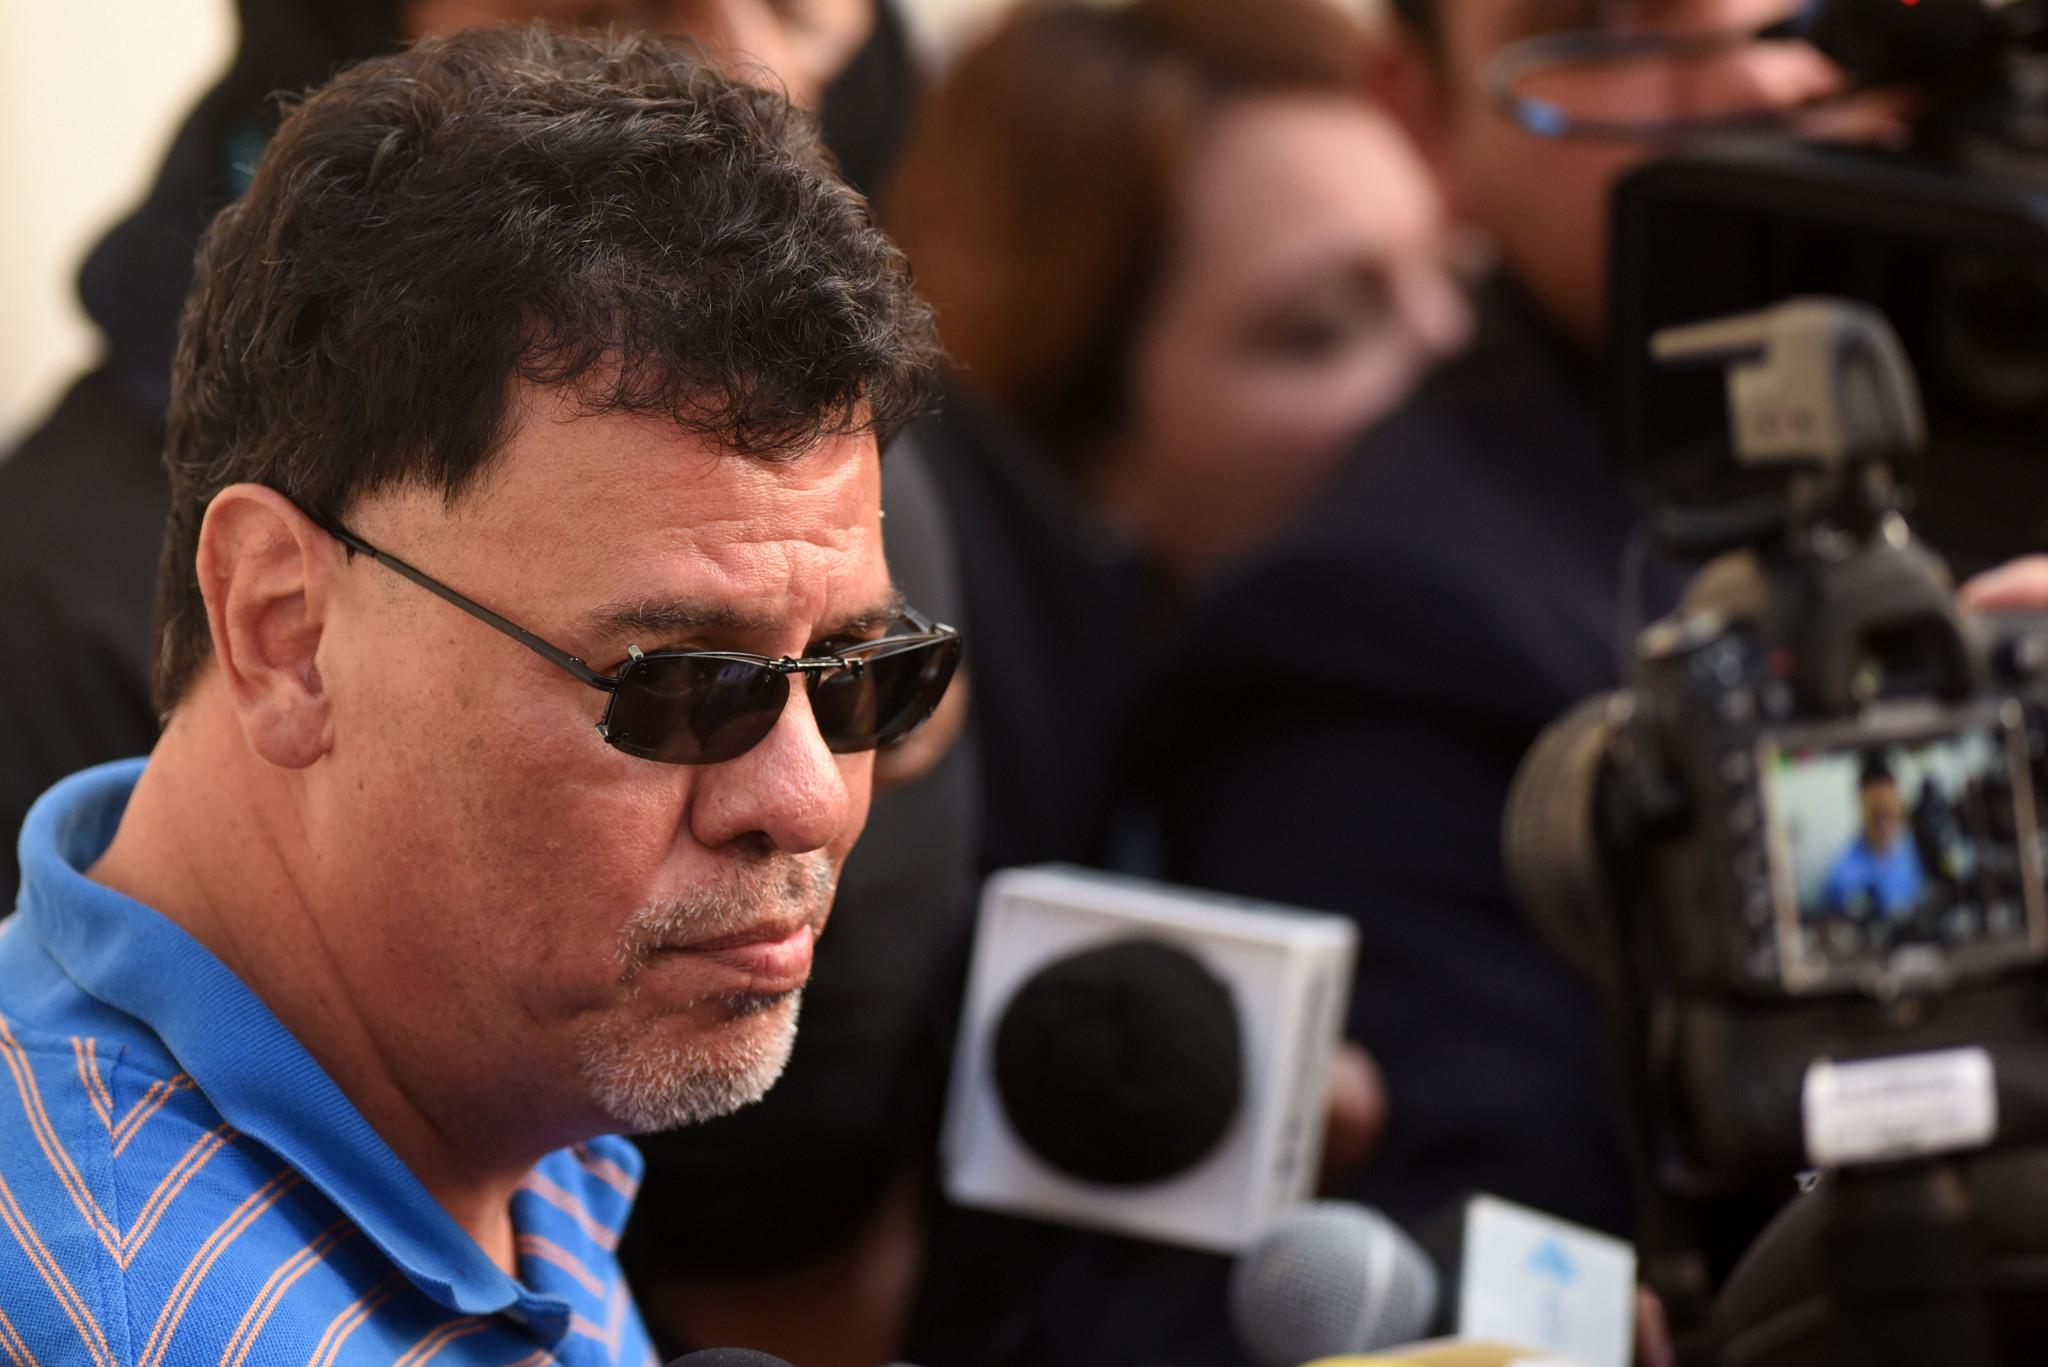 Former El Salvador football head expected to change plea in corruption case